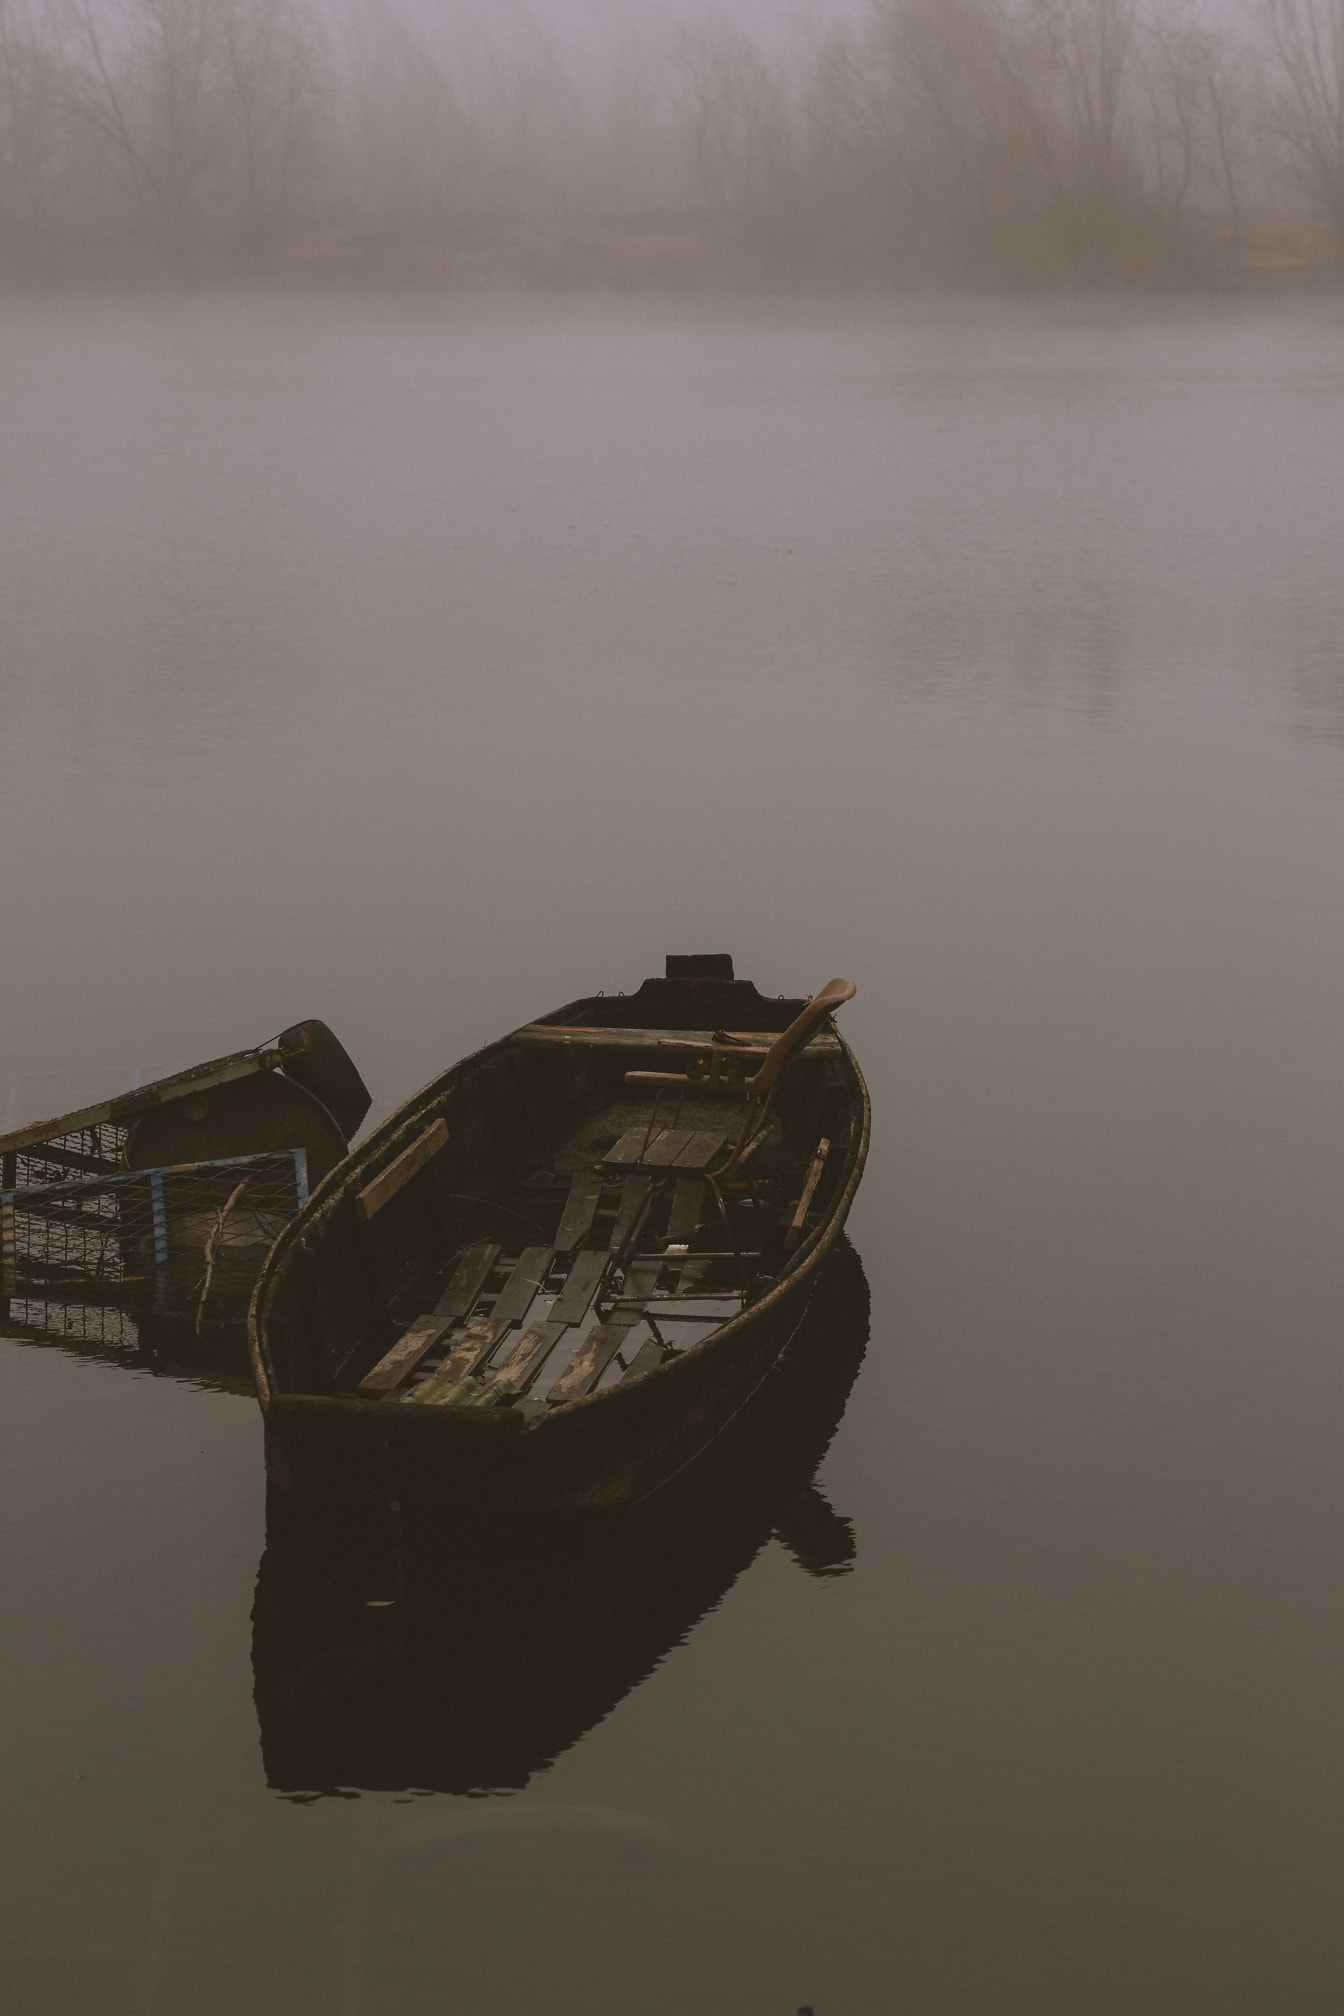 Opustené drevené rybárske lode na hmlistom brehu rieky